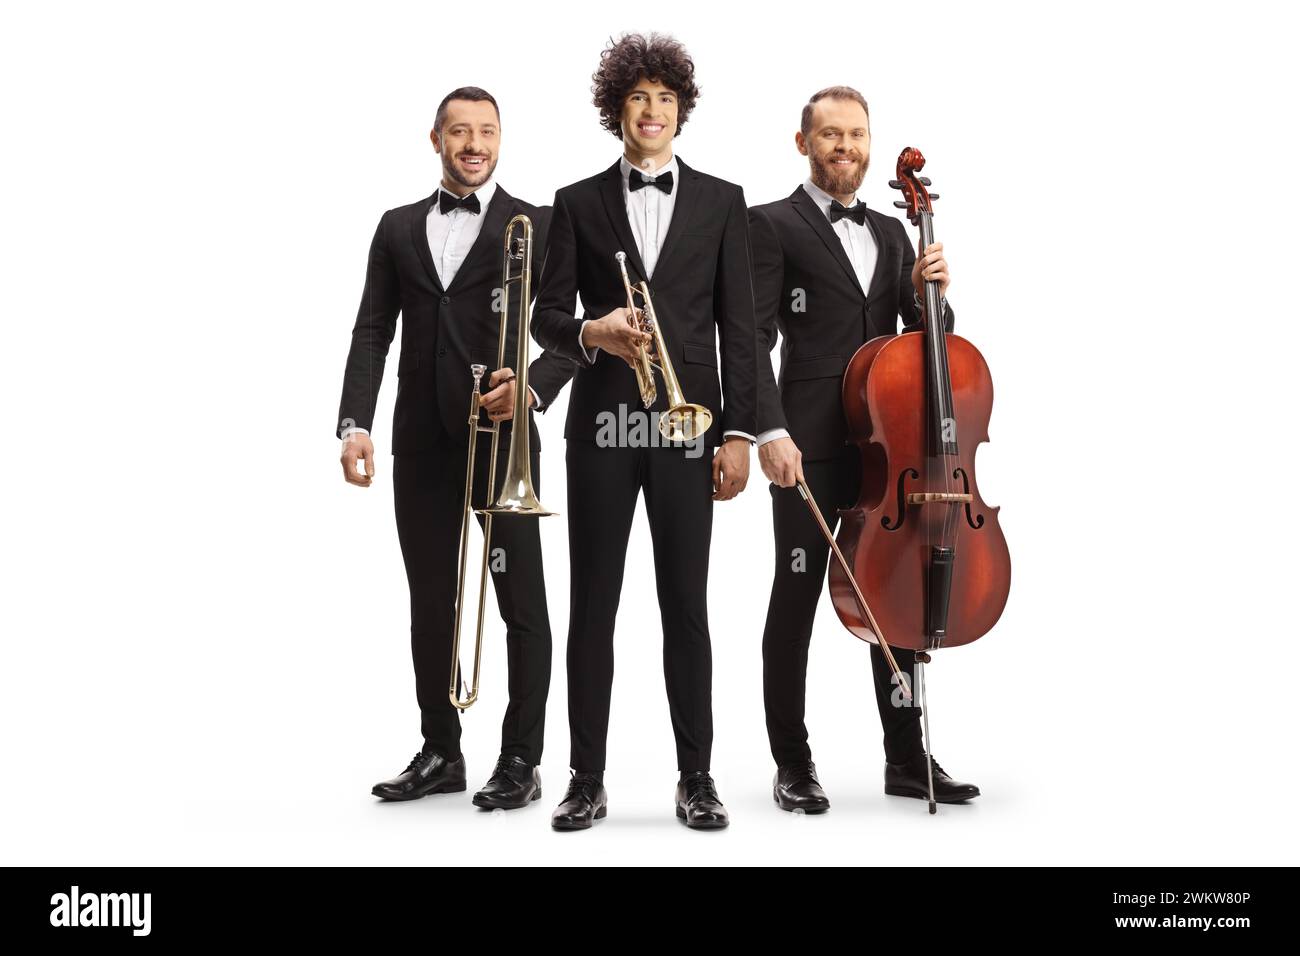 Portrait en pied de musiciens posant avec un trombone, une trompette et un violoncelle isolé sur fond blanc Banque D'Images